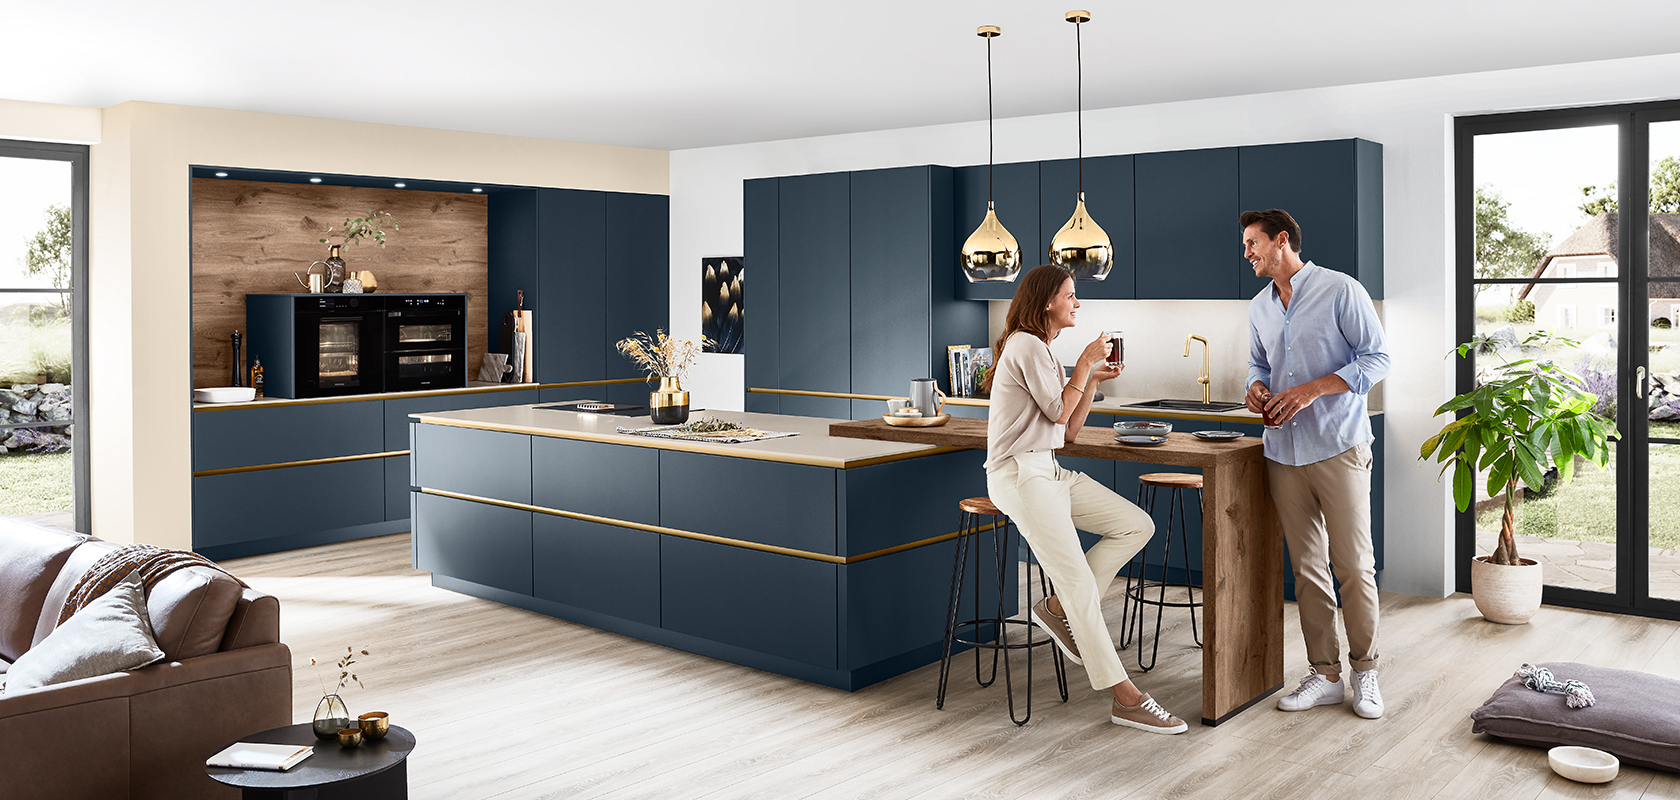 Moderne Kücheninnenarchitektur mit einem Paar, das um eine stilvolle Insel mit schlanken marineblauen Schränken und eleganten goldfarbenen Verzierungen Wein genießt, unter warmen Pendelleuchten.